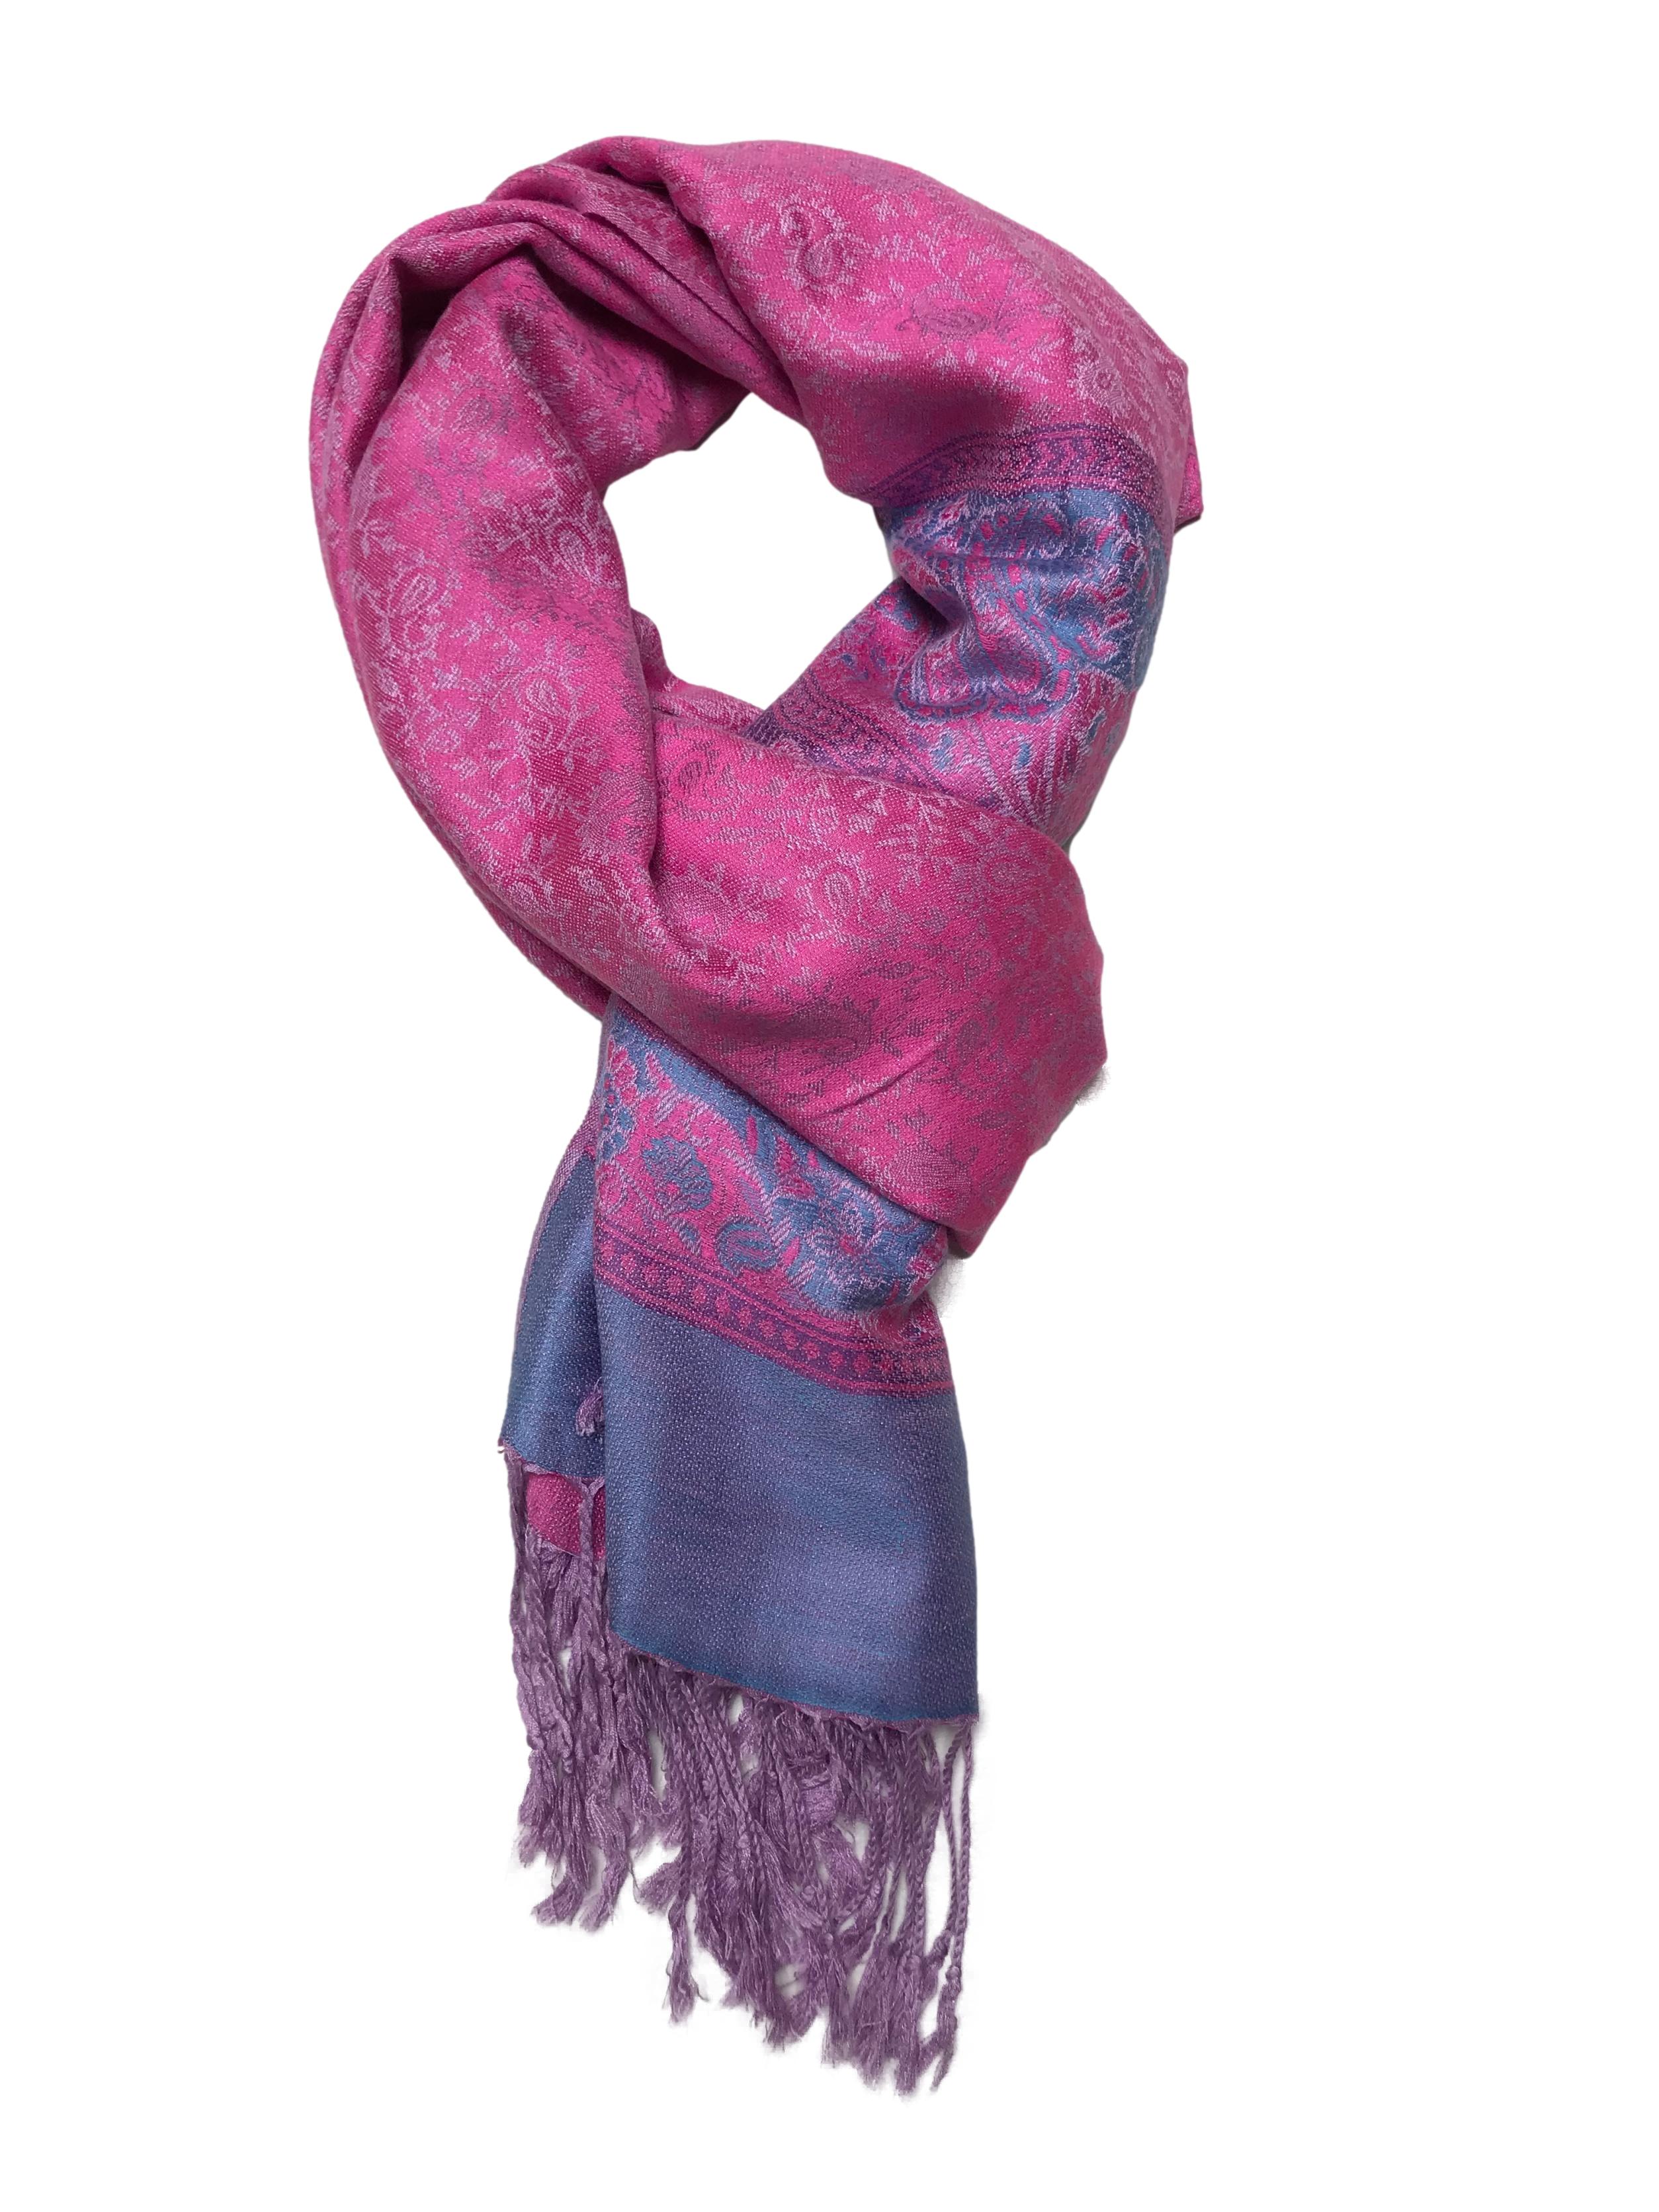 Pashmina en tonos rosado, indigo y morado, flecos en extremos. Medidas 70x180cm